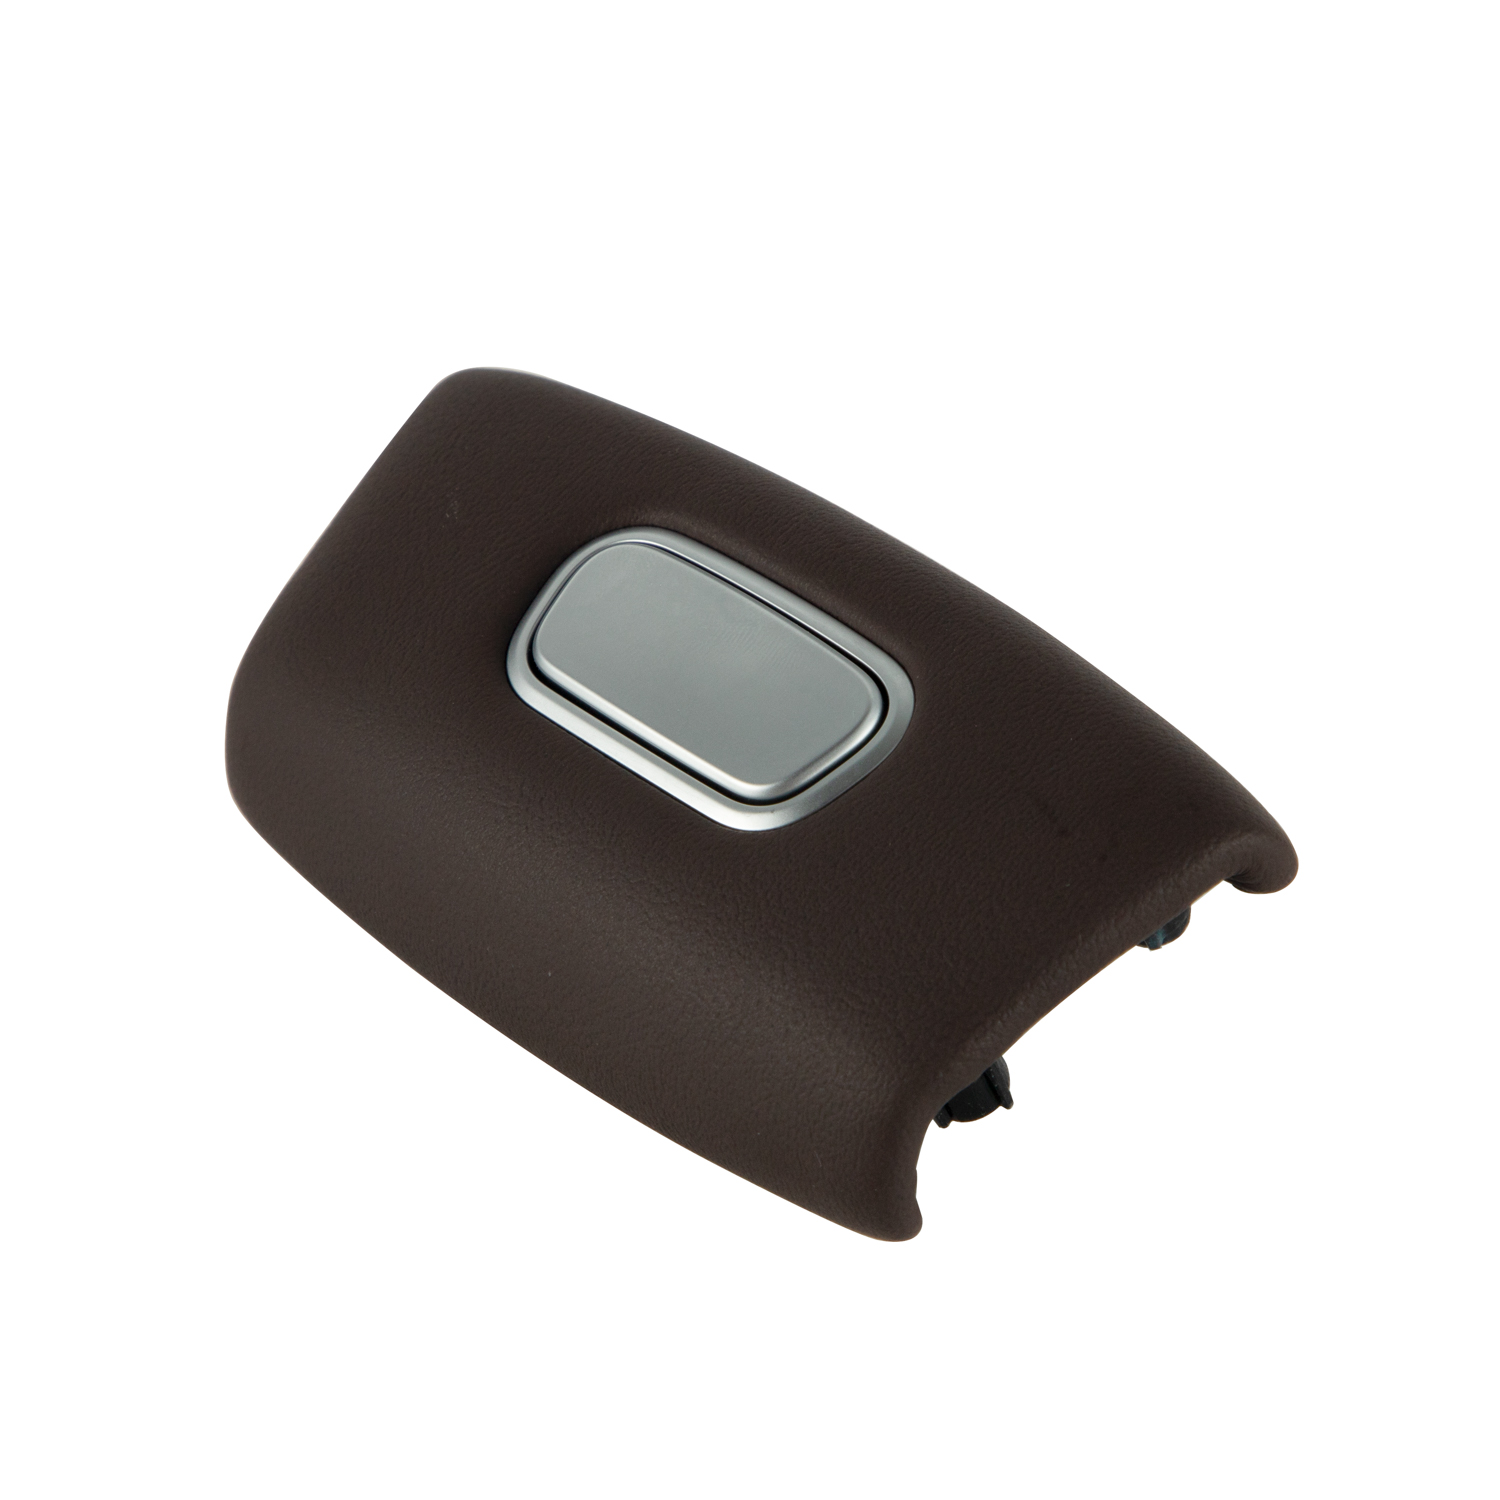 OEM-Anpassung für Auto-Mittelkonsolenteile, Fingerdruckknopf für Armlehnenbox